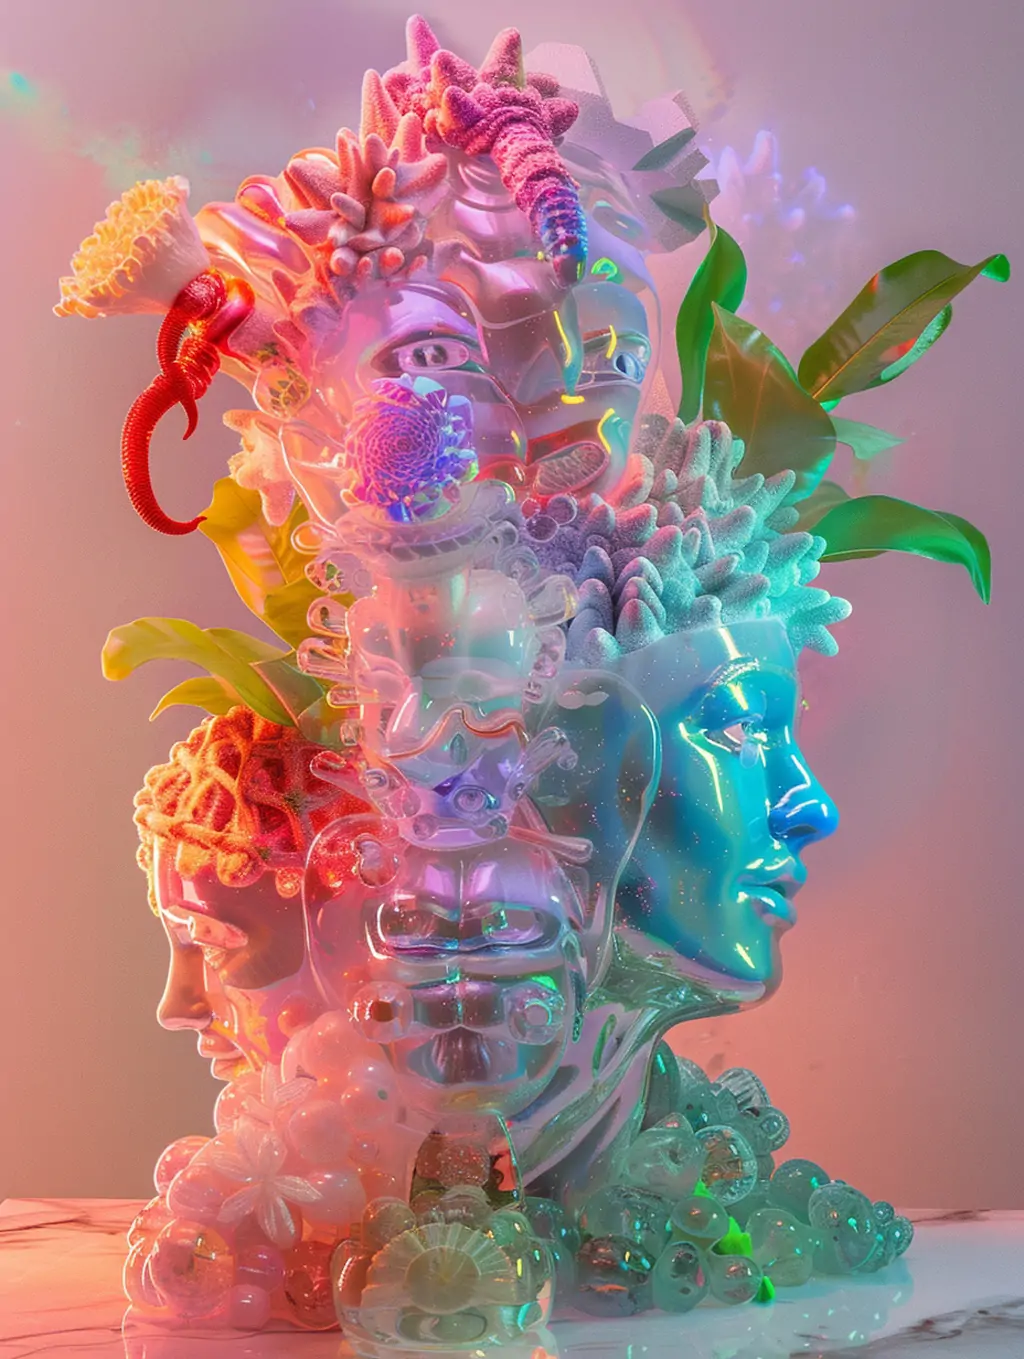 抽象的玻璃塑料植物人像混合未来主义艺术画Midjourney关键词咒语 - Ai宇宙吧--Ai宇宙吧-